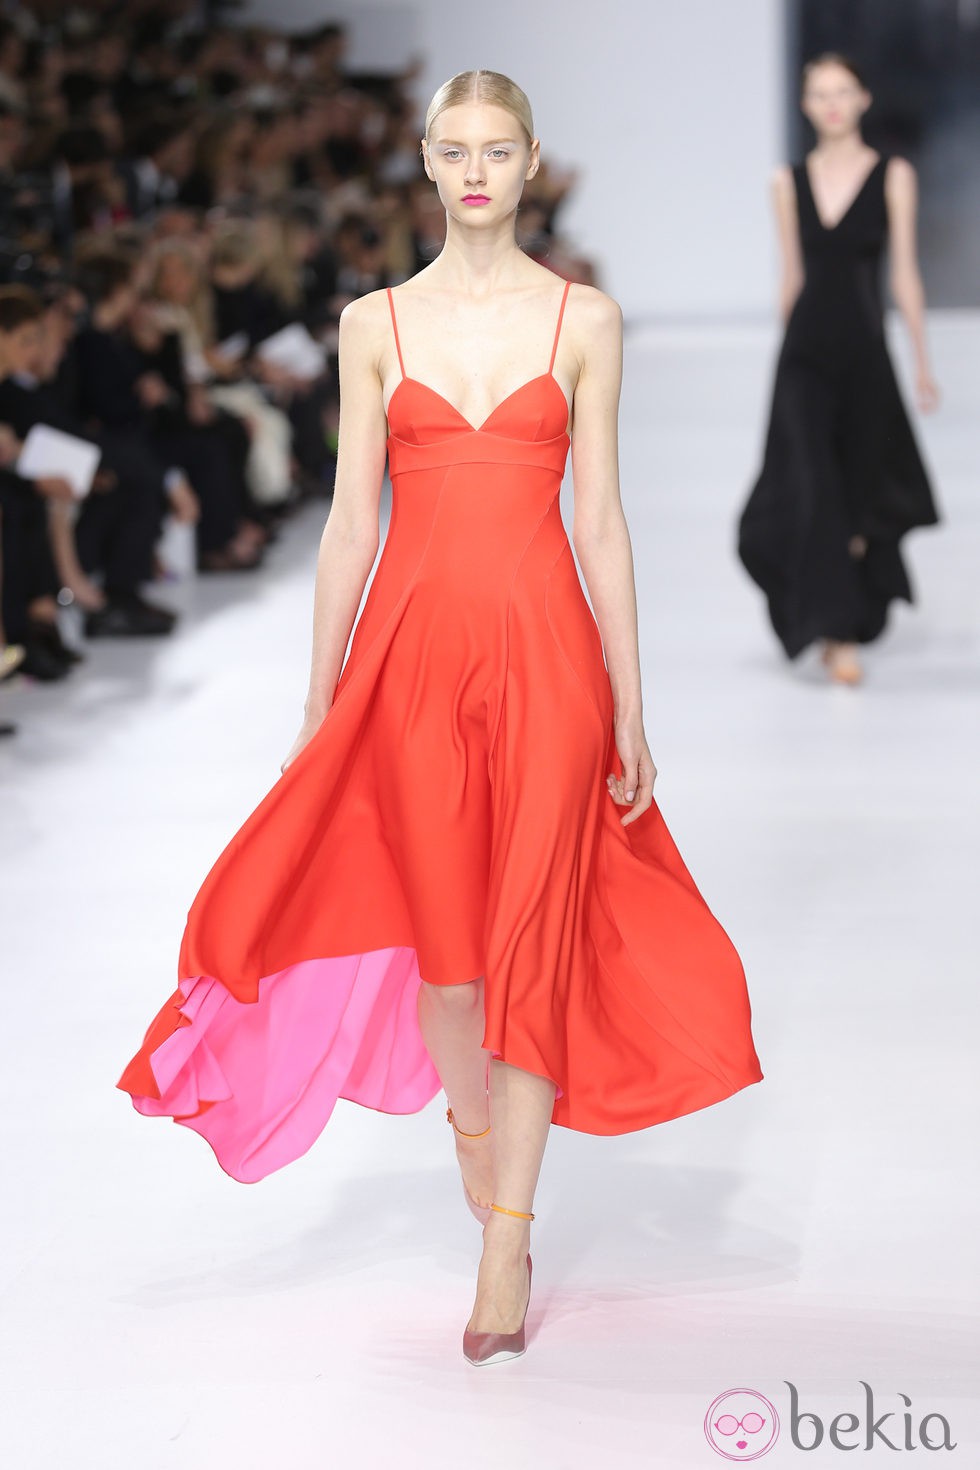 Vestido rojo de la colección crucero 2014 de Dior